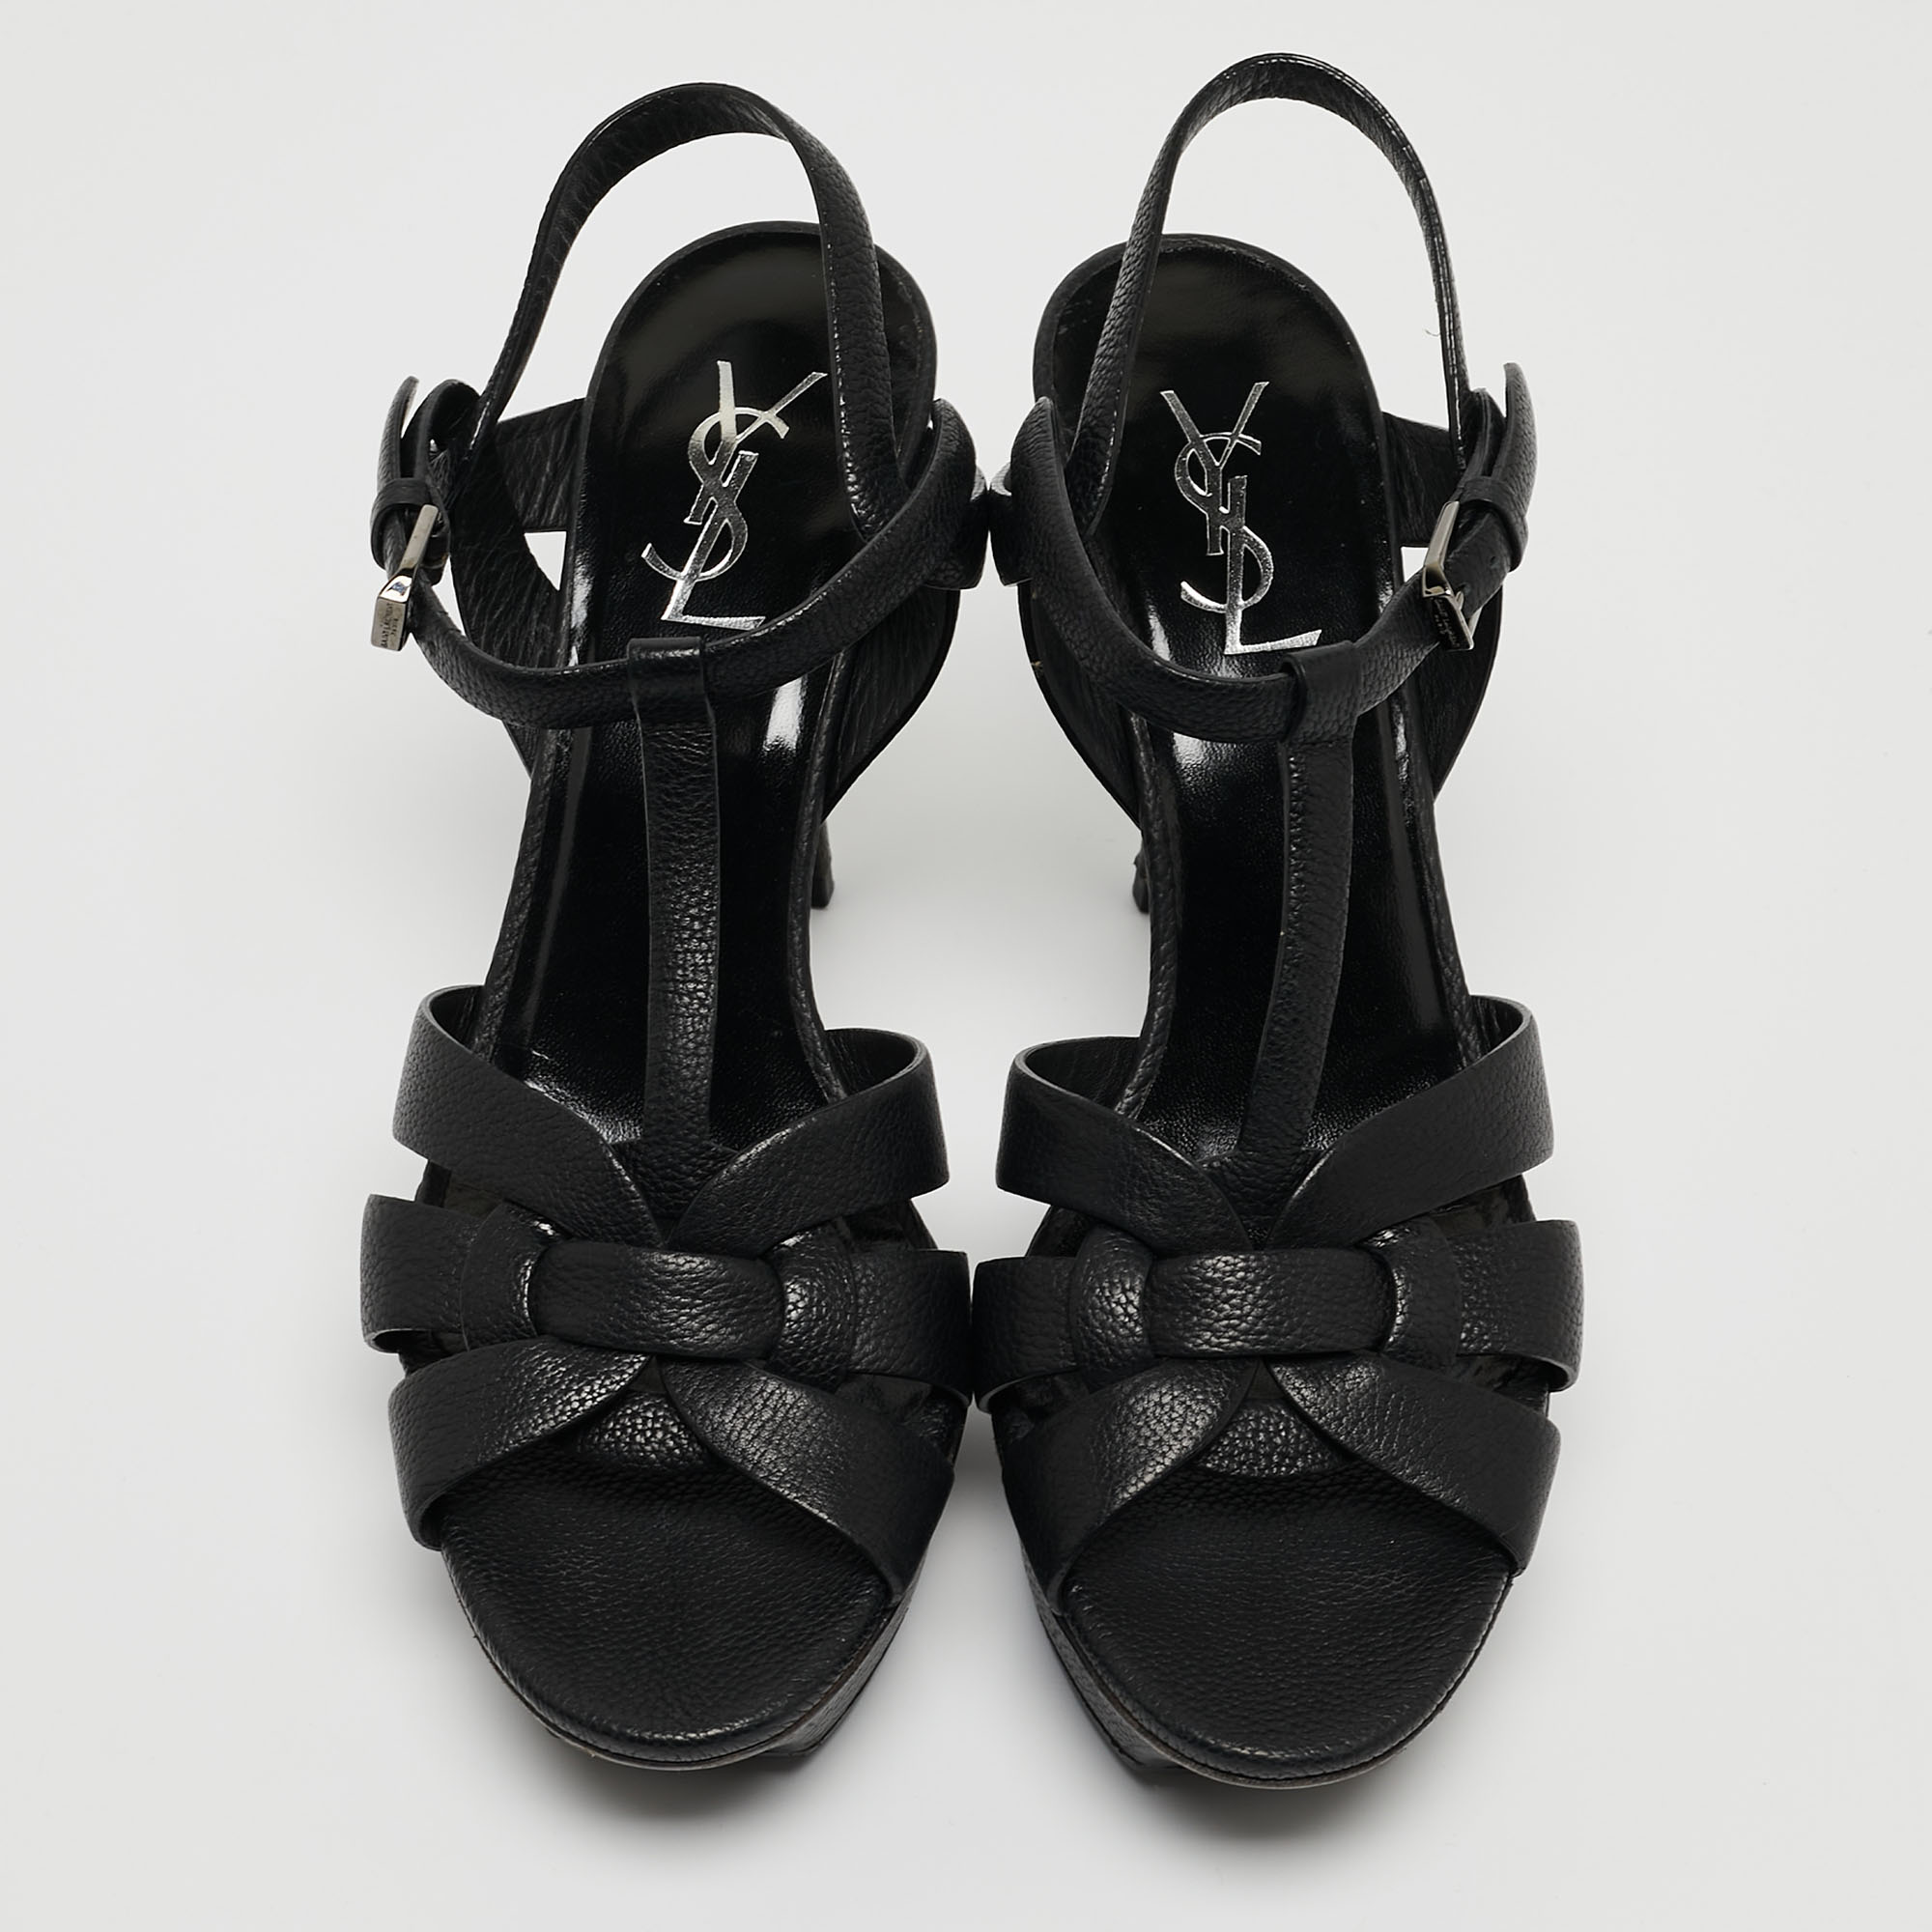 Saint Laurent Paris Black Leather Tribute Ankle Strap Sandals Size 39.5